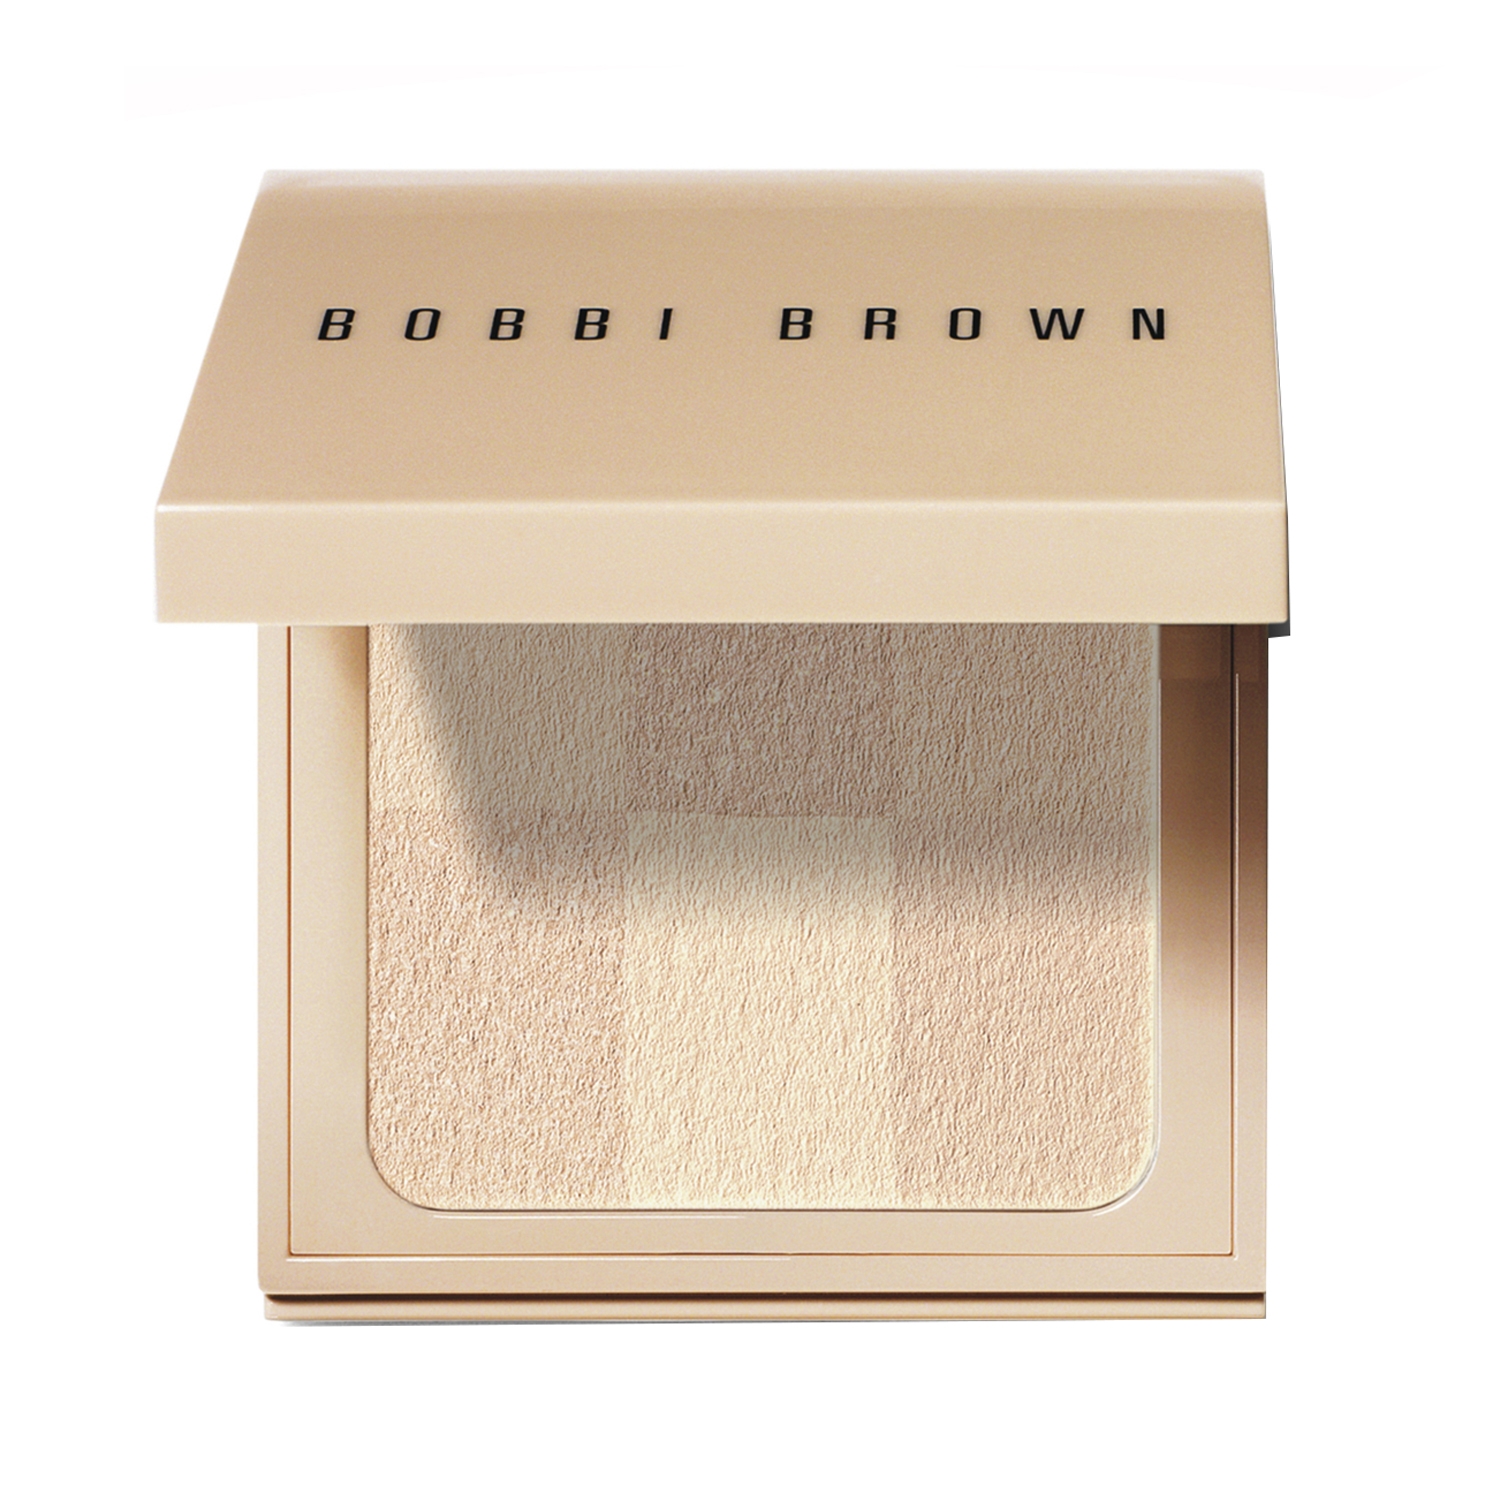 Bobbi Brown | Bobbi Brown Nude Finish Illuminating Powder - Bare (6.6g)